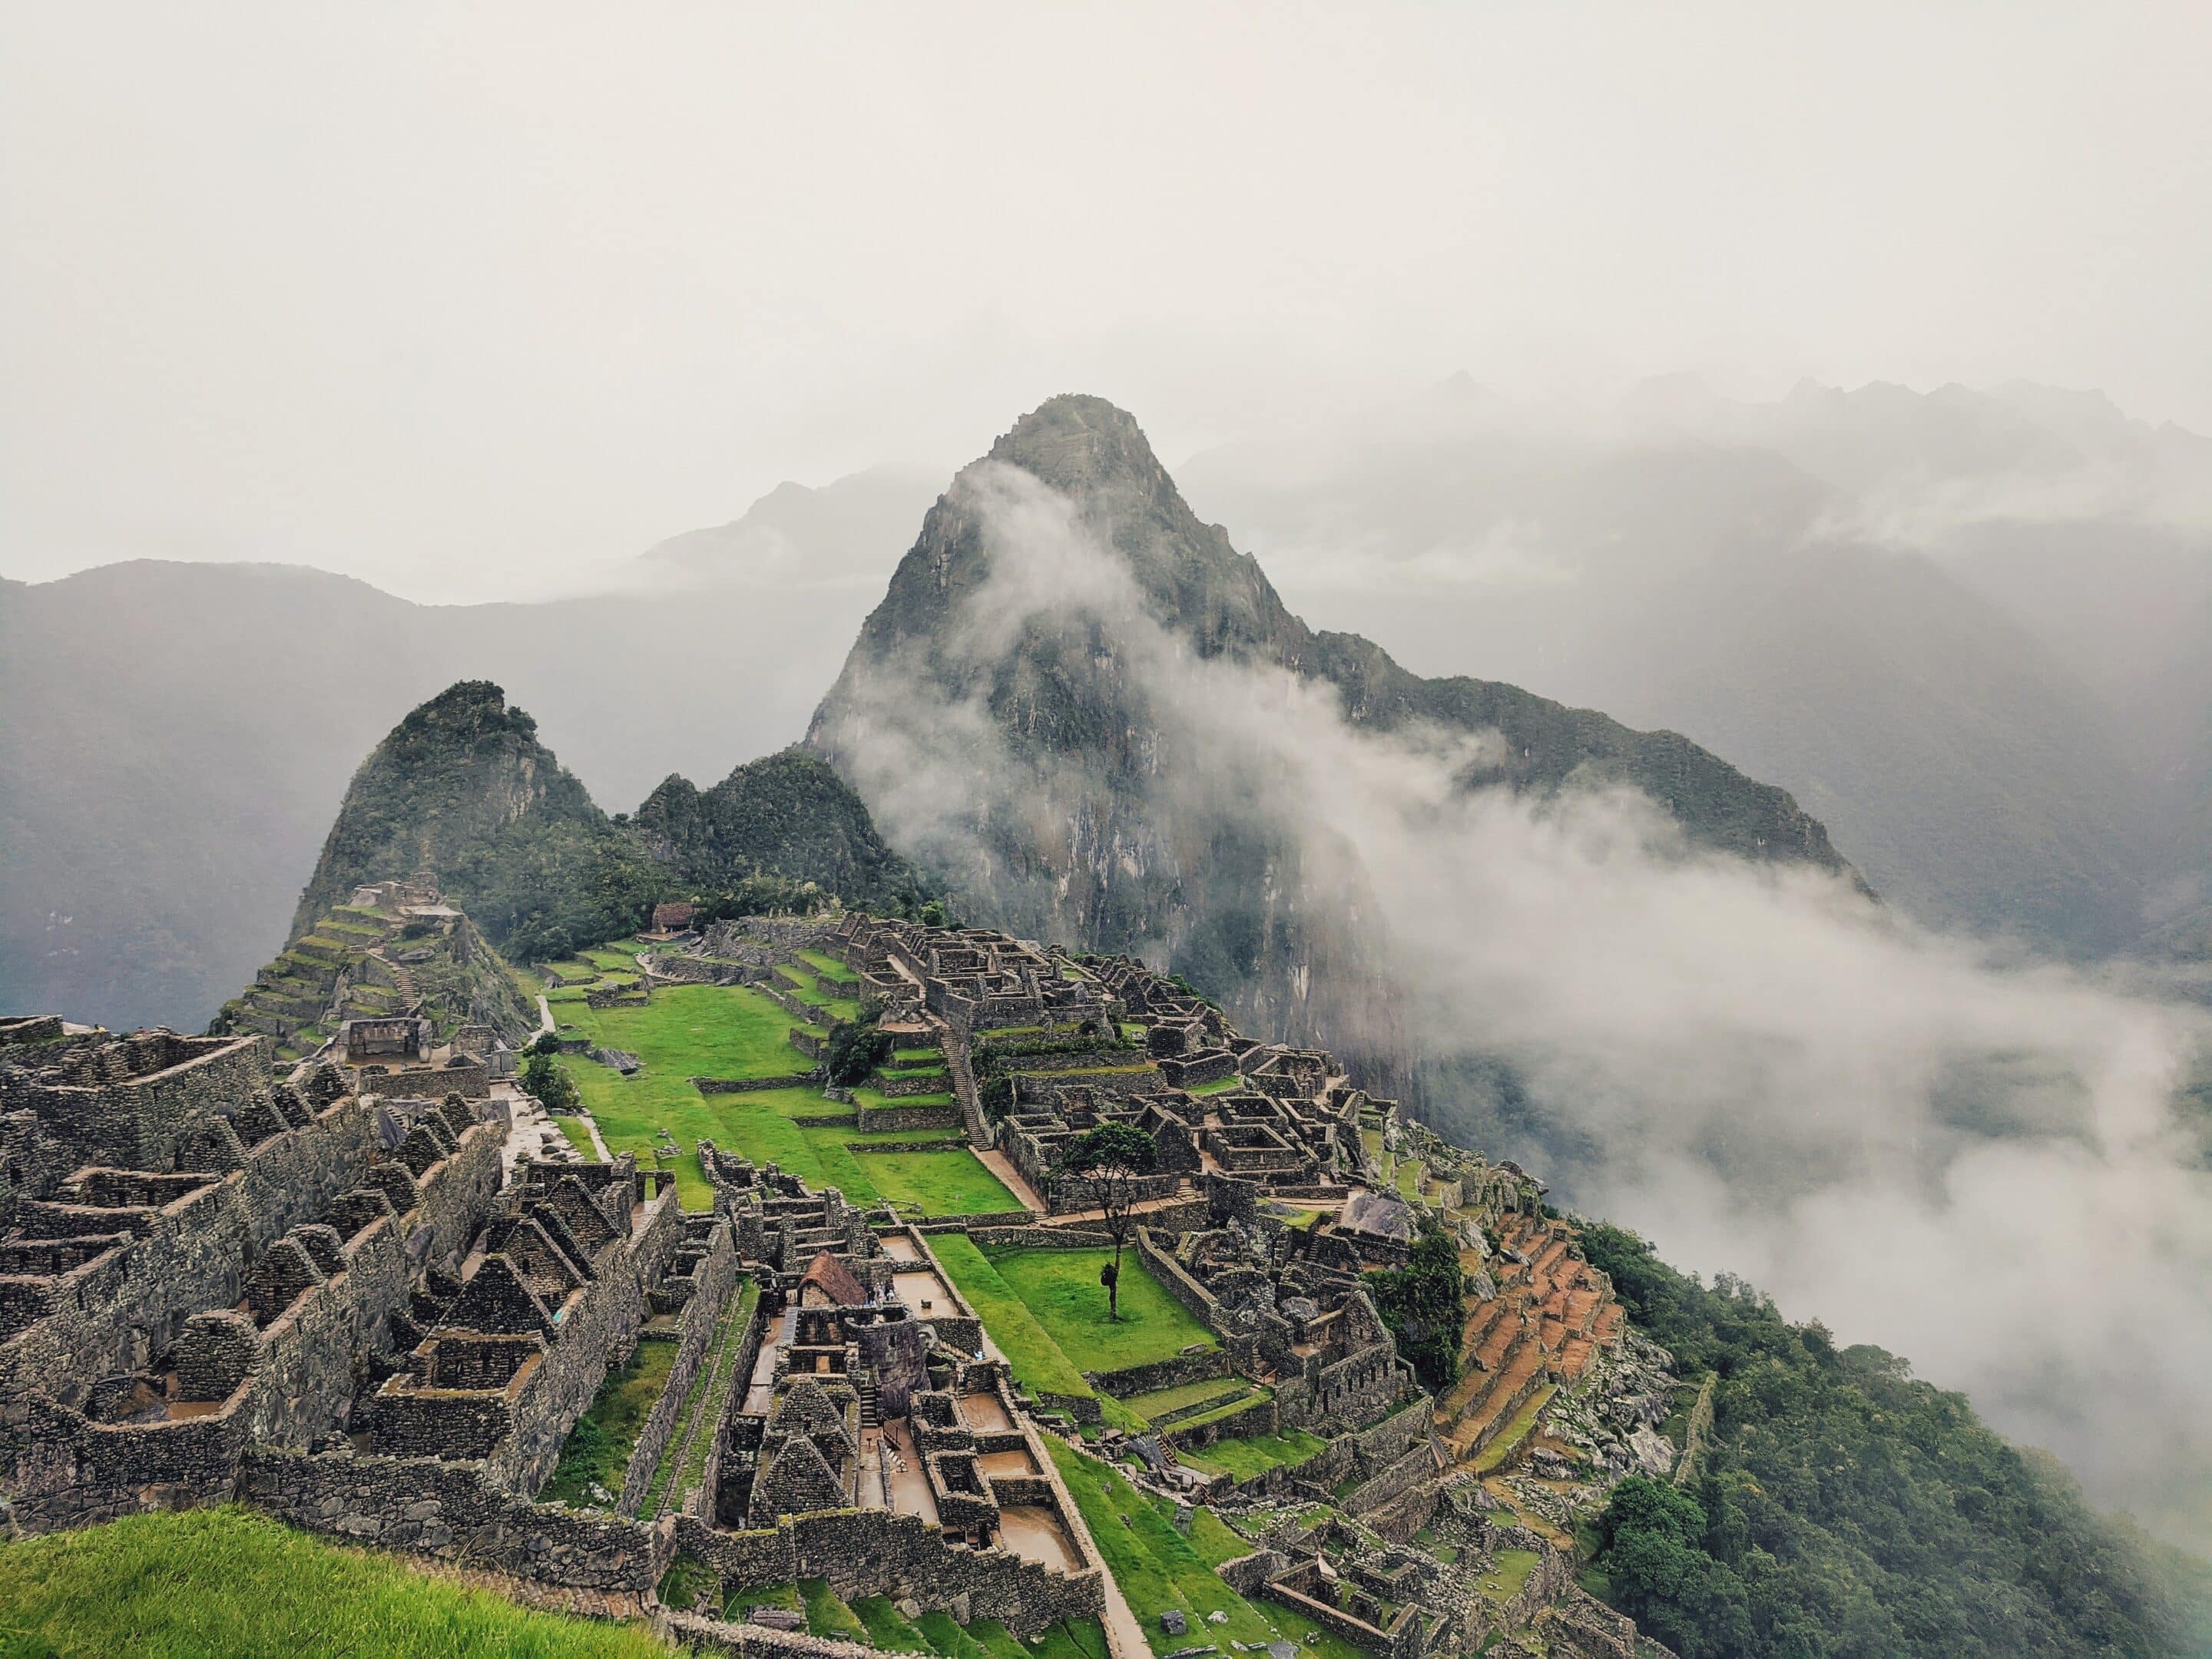 Village de Machu Picchu au Pérou
Unslpash